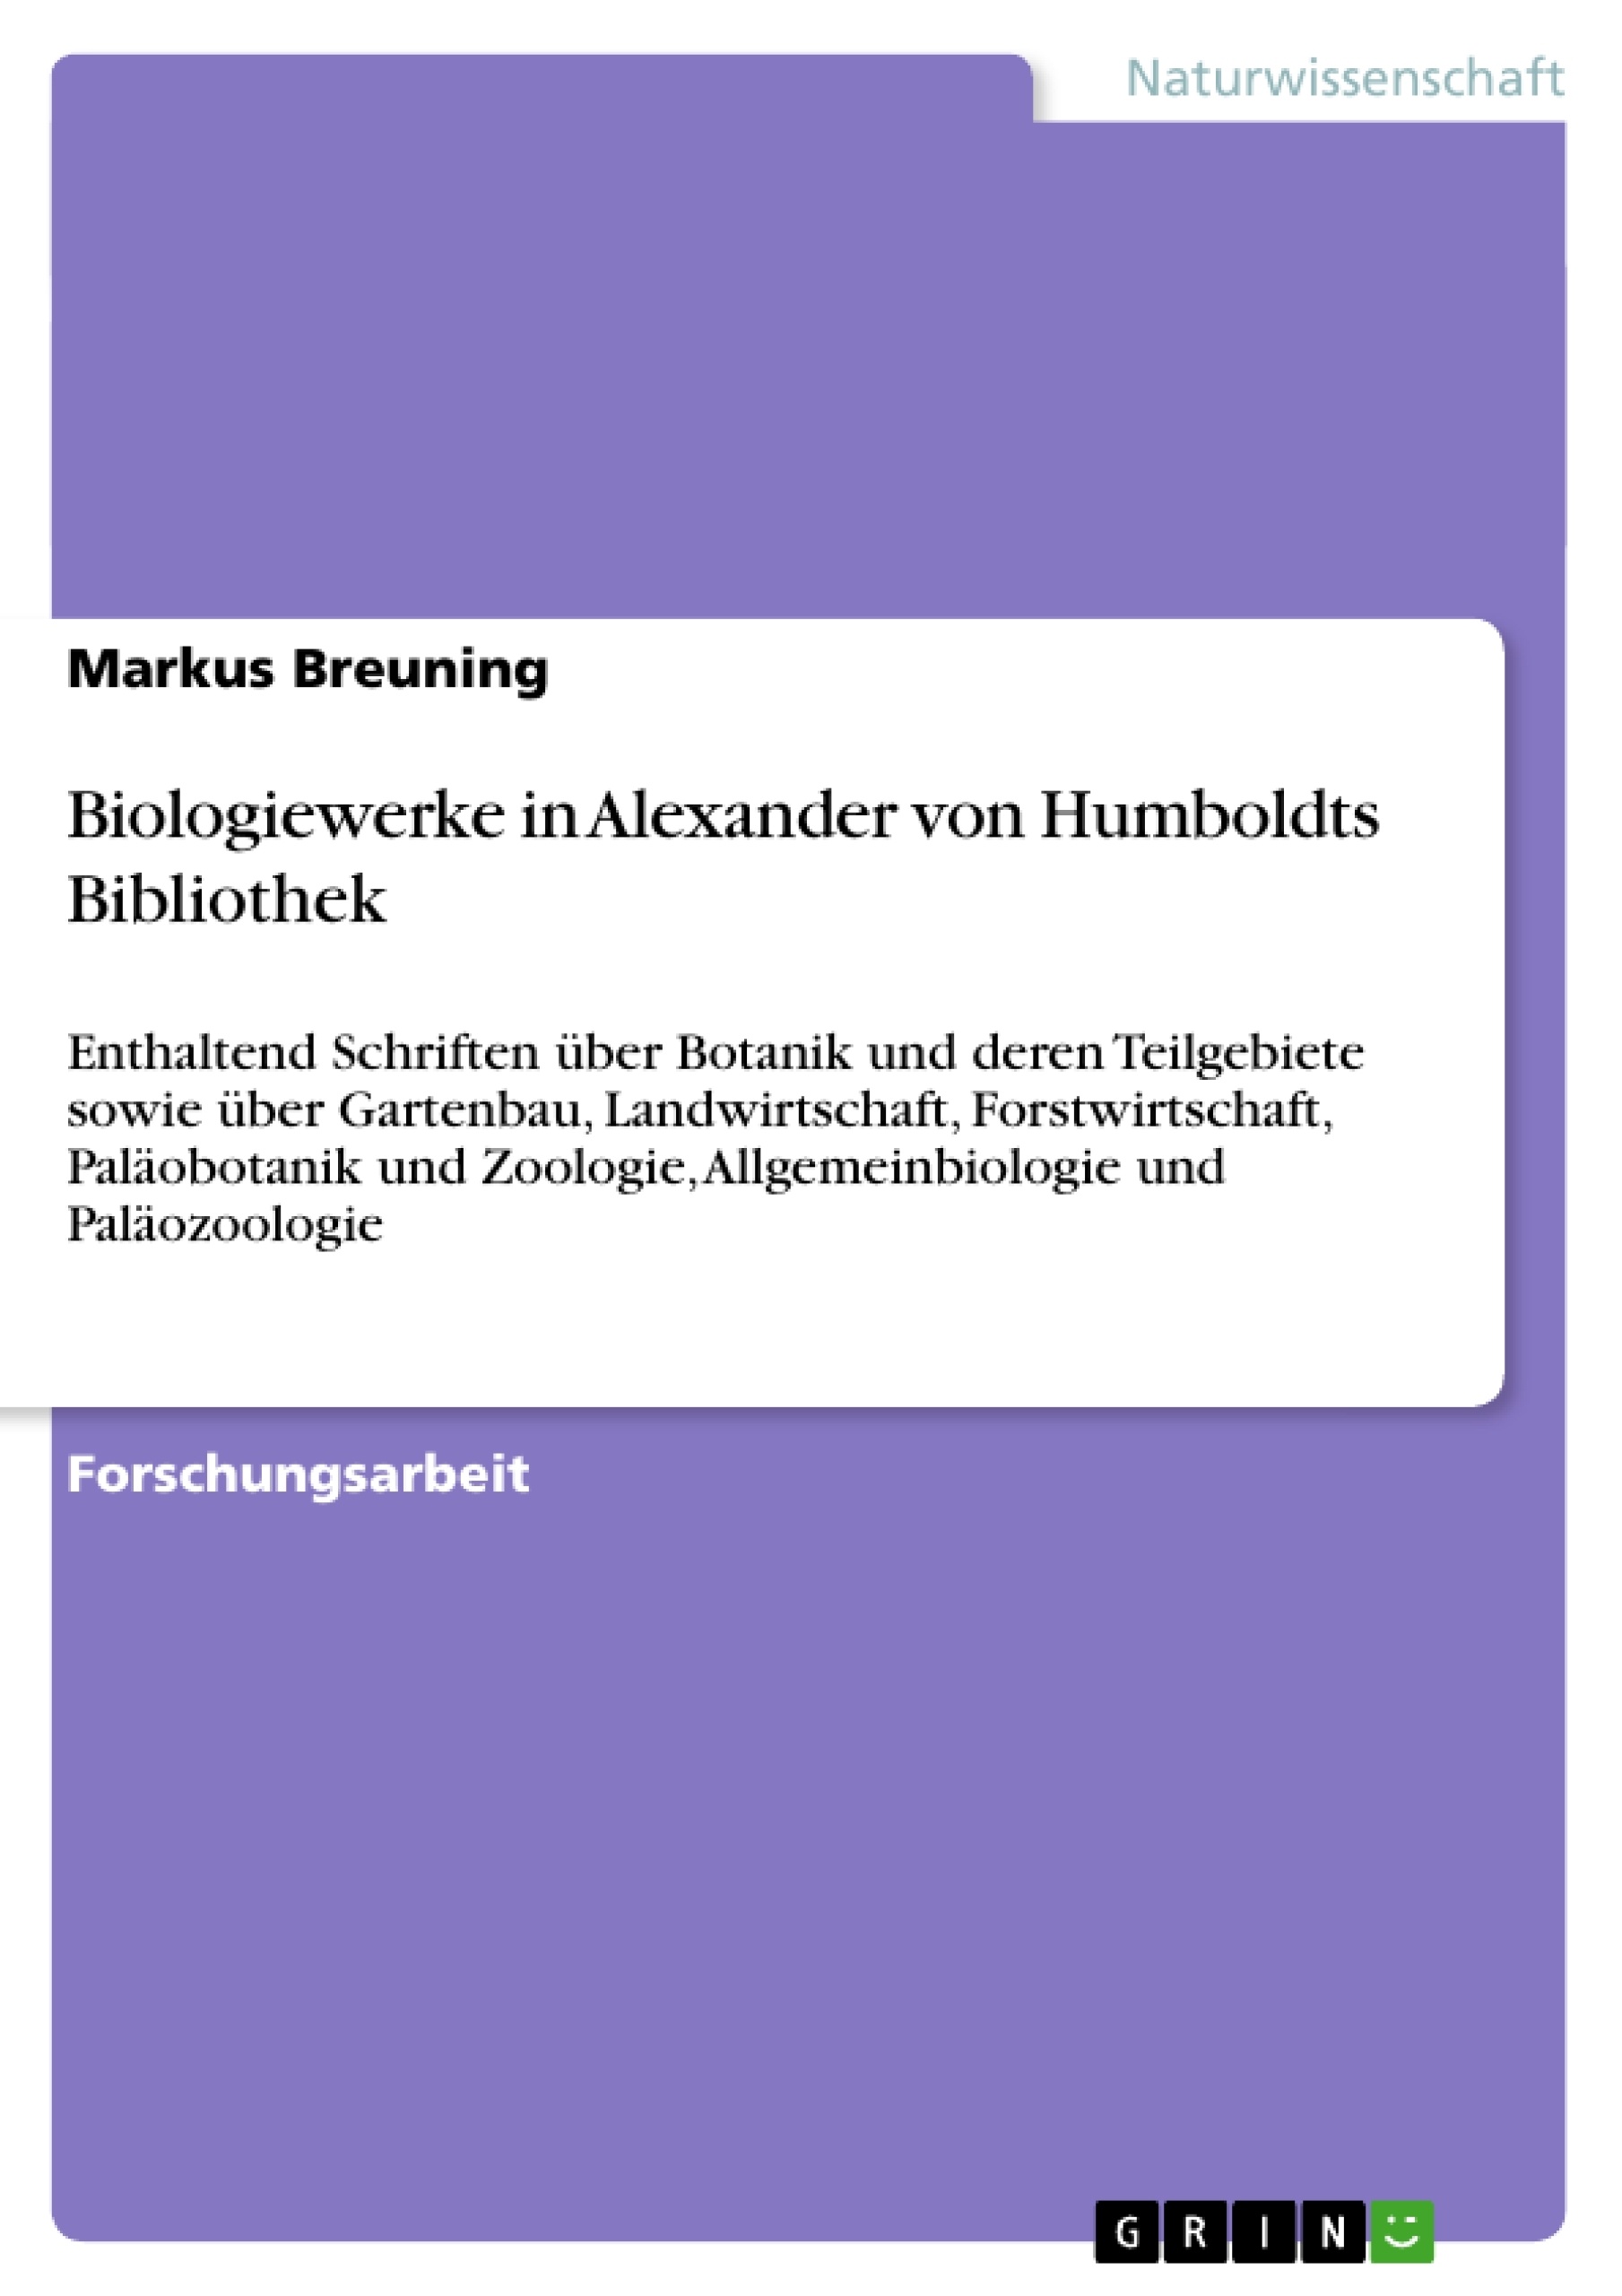 Title: Biologiewerke in Alexander von Humboldts Bibliothek